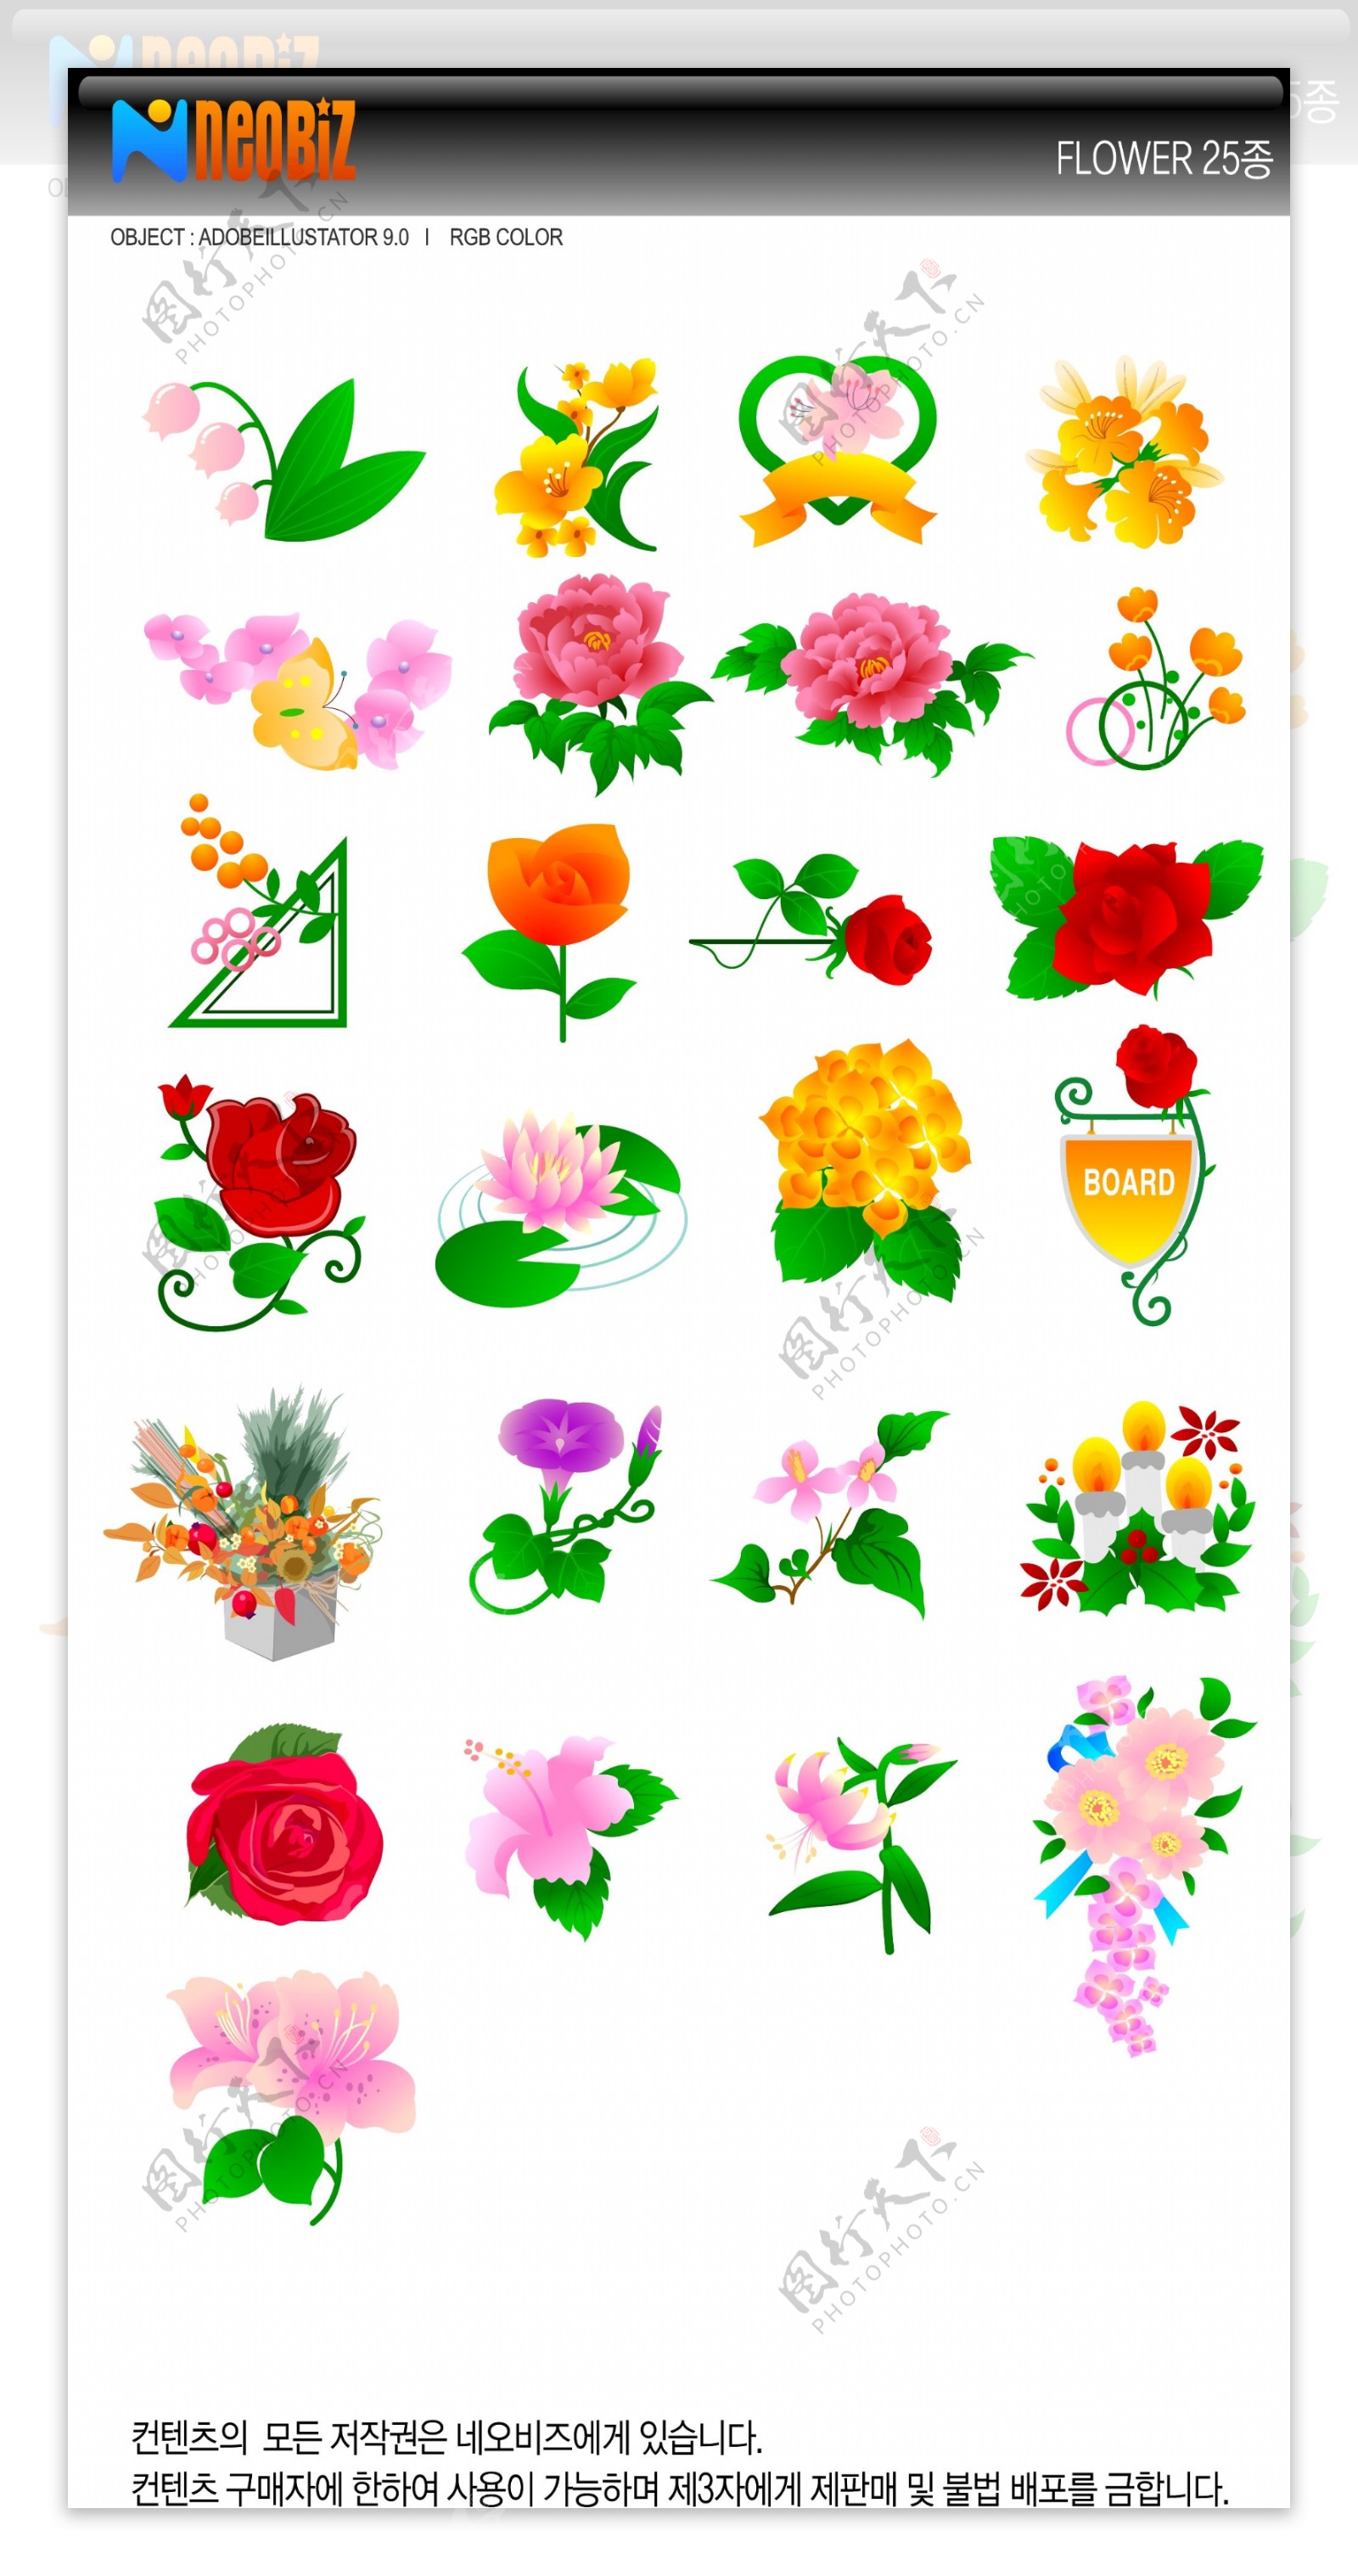 牡丹玫瑰郁金香和其他花朵矢量素材